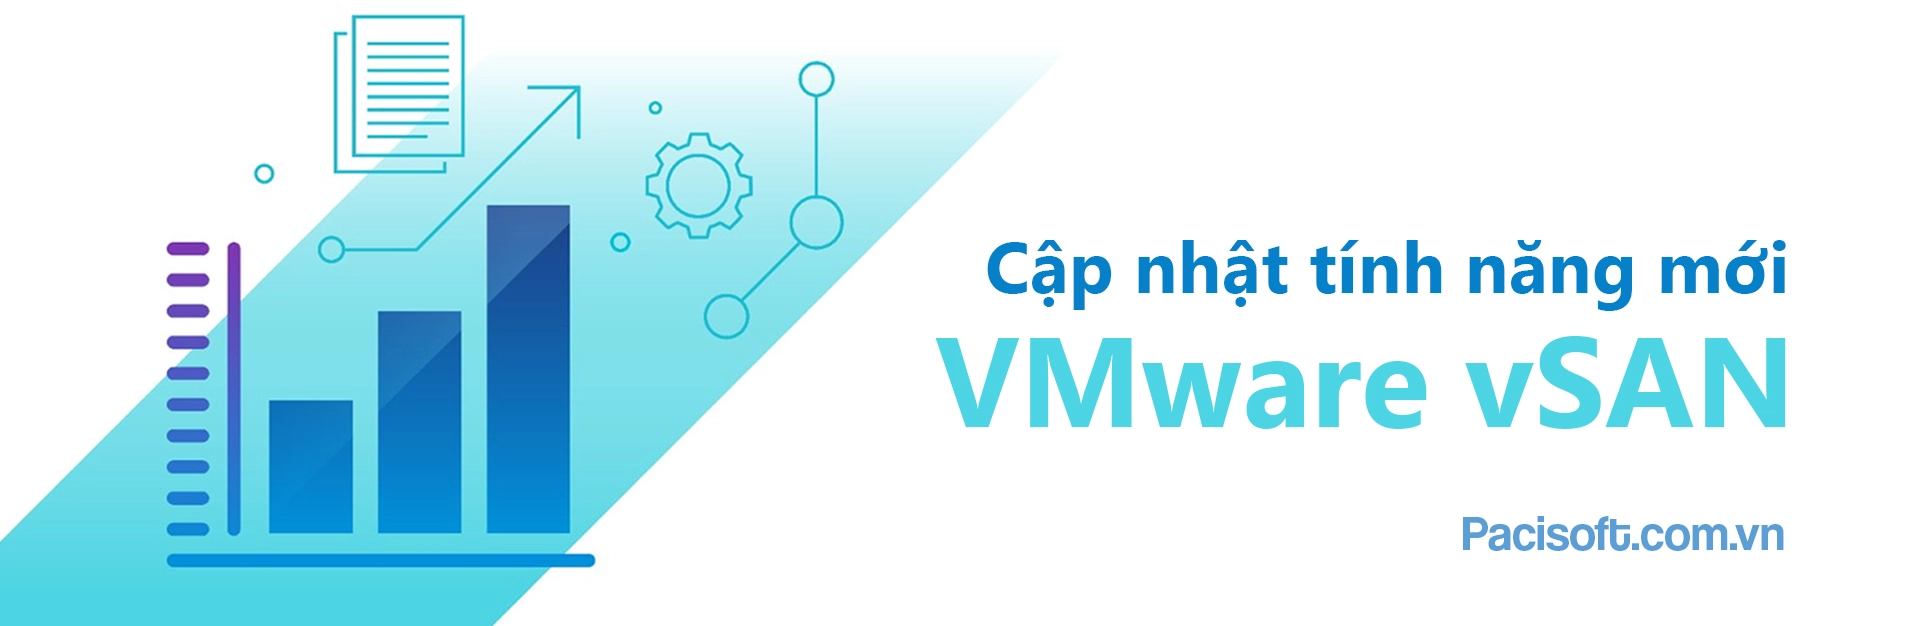 Cập nhật tính năng mới trong phàn mềm ảo hóa VMware vSAN